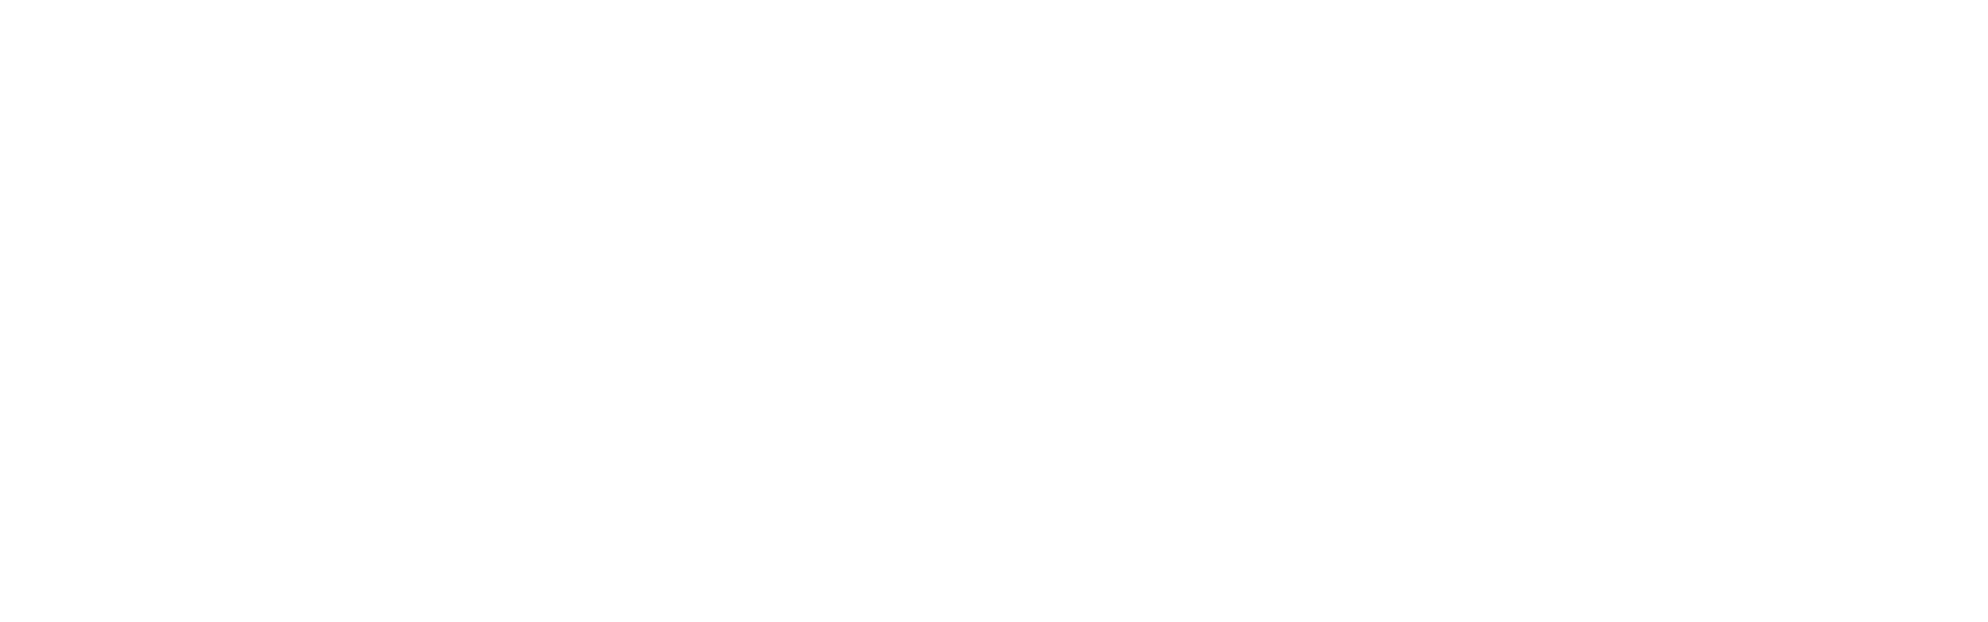 OpenFF NAGL Models 0.1.1+9.g421f40a.dirty documentation logo